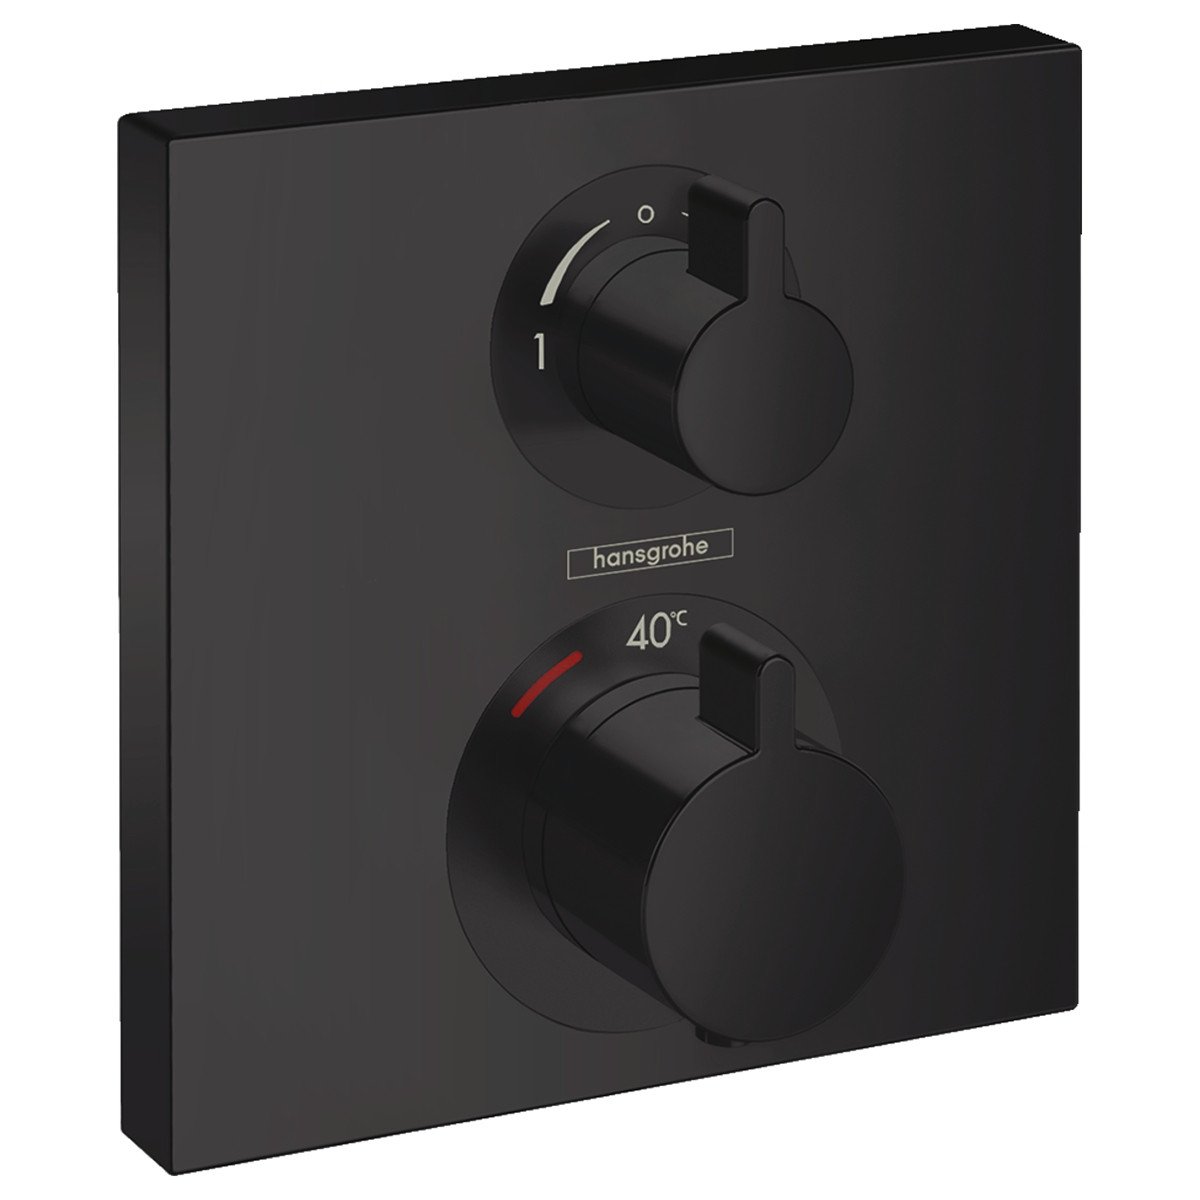 ECOSTAT Square термостат для 2х потребителей, с запорно/переключающим вентилем, СМ, черный матовый